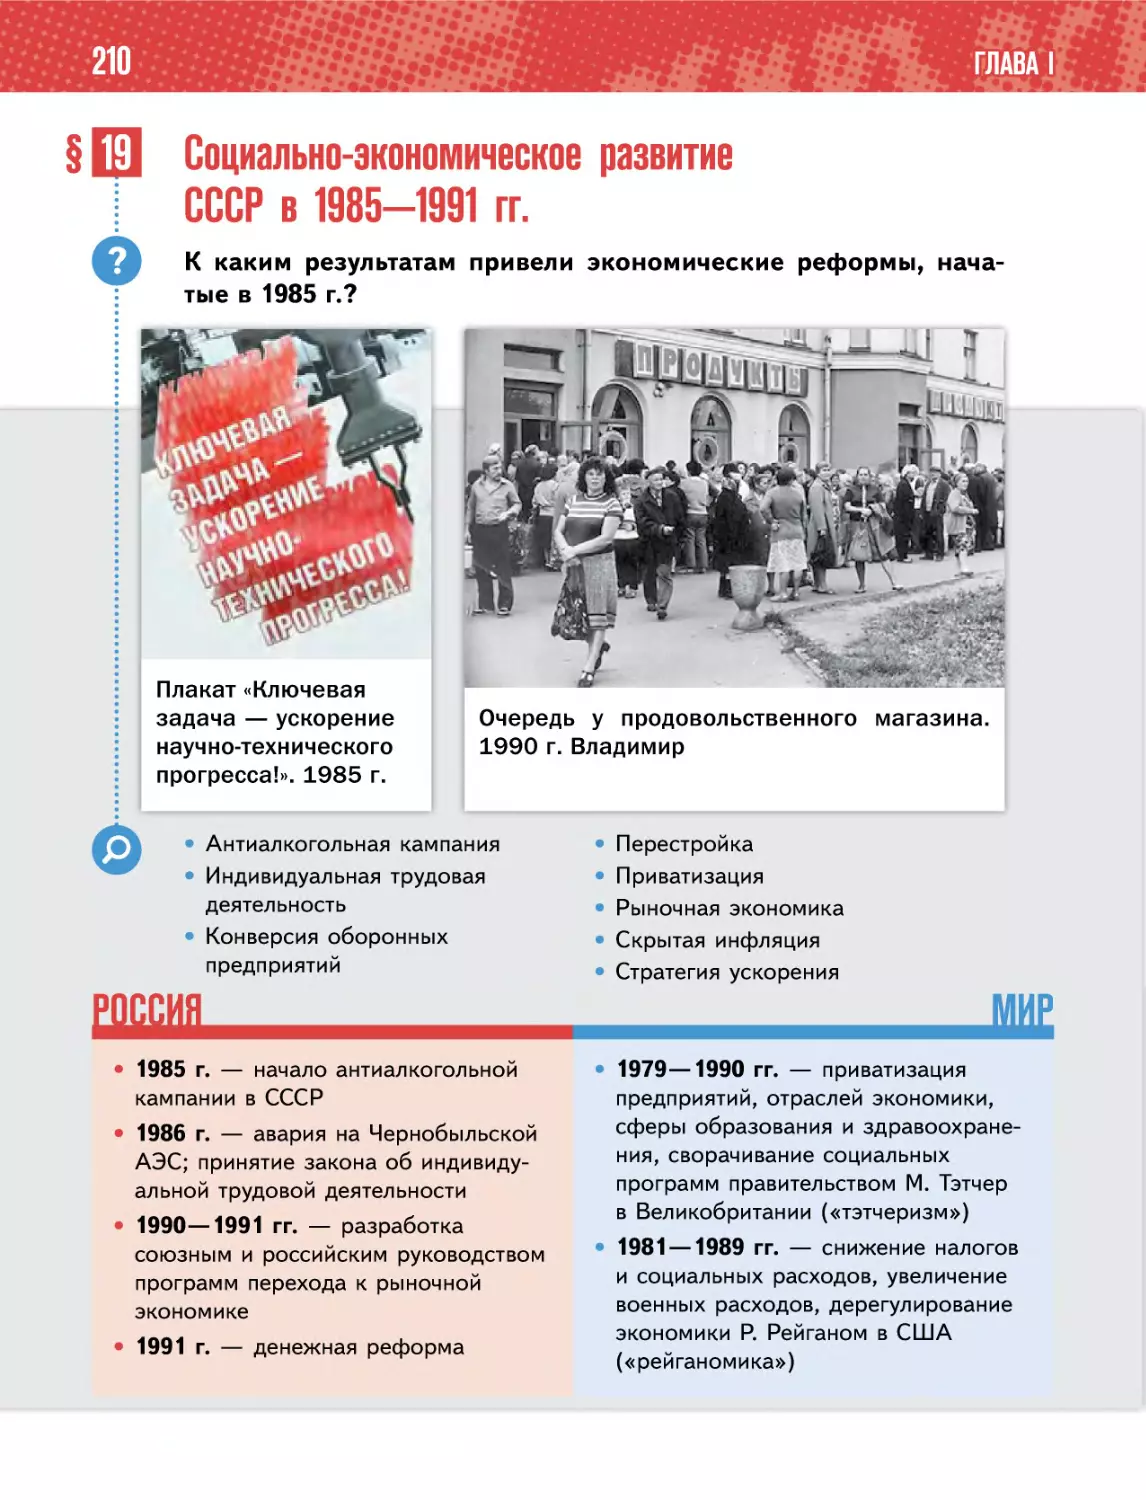 § 19 Социально-экономическое развитиеСССР в 1985—1991 гг.